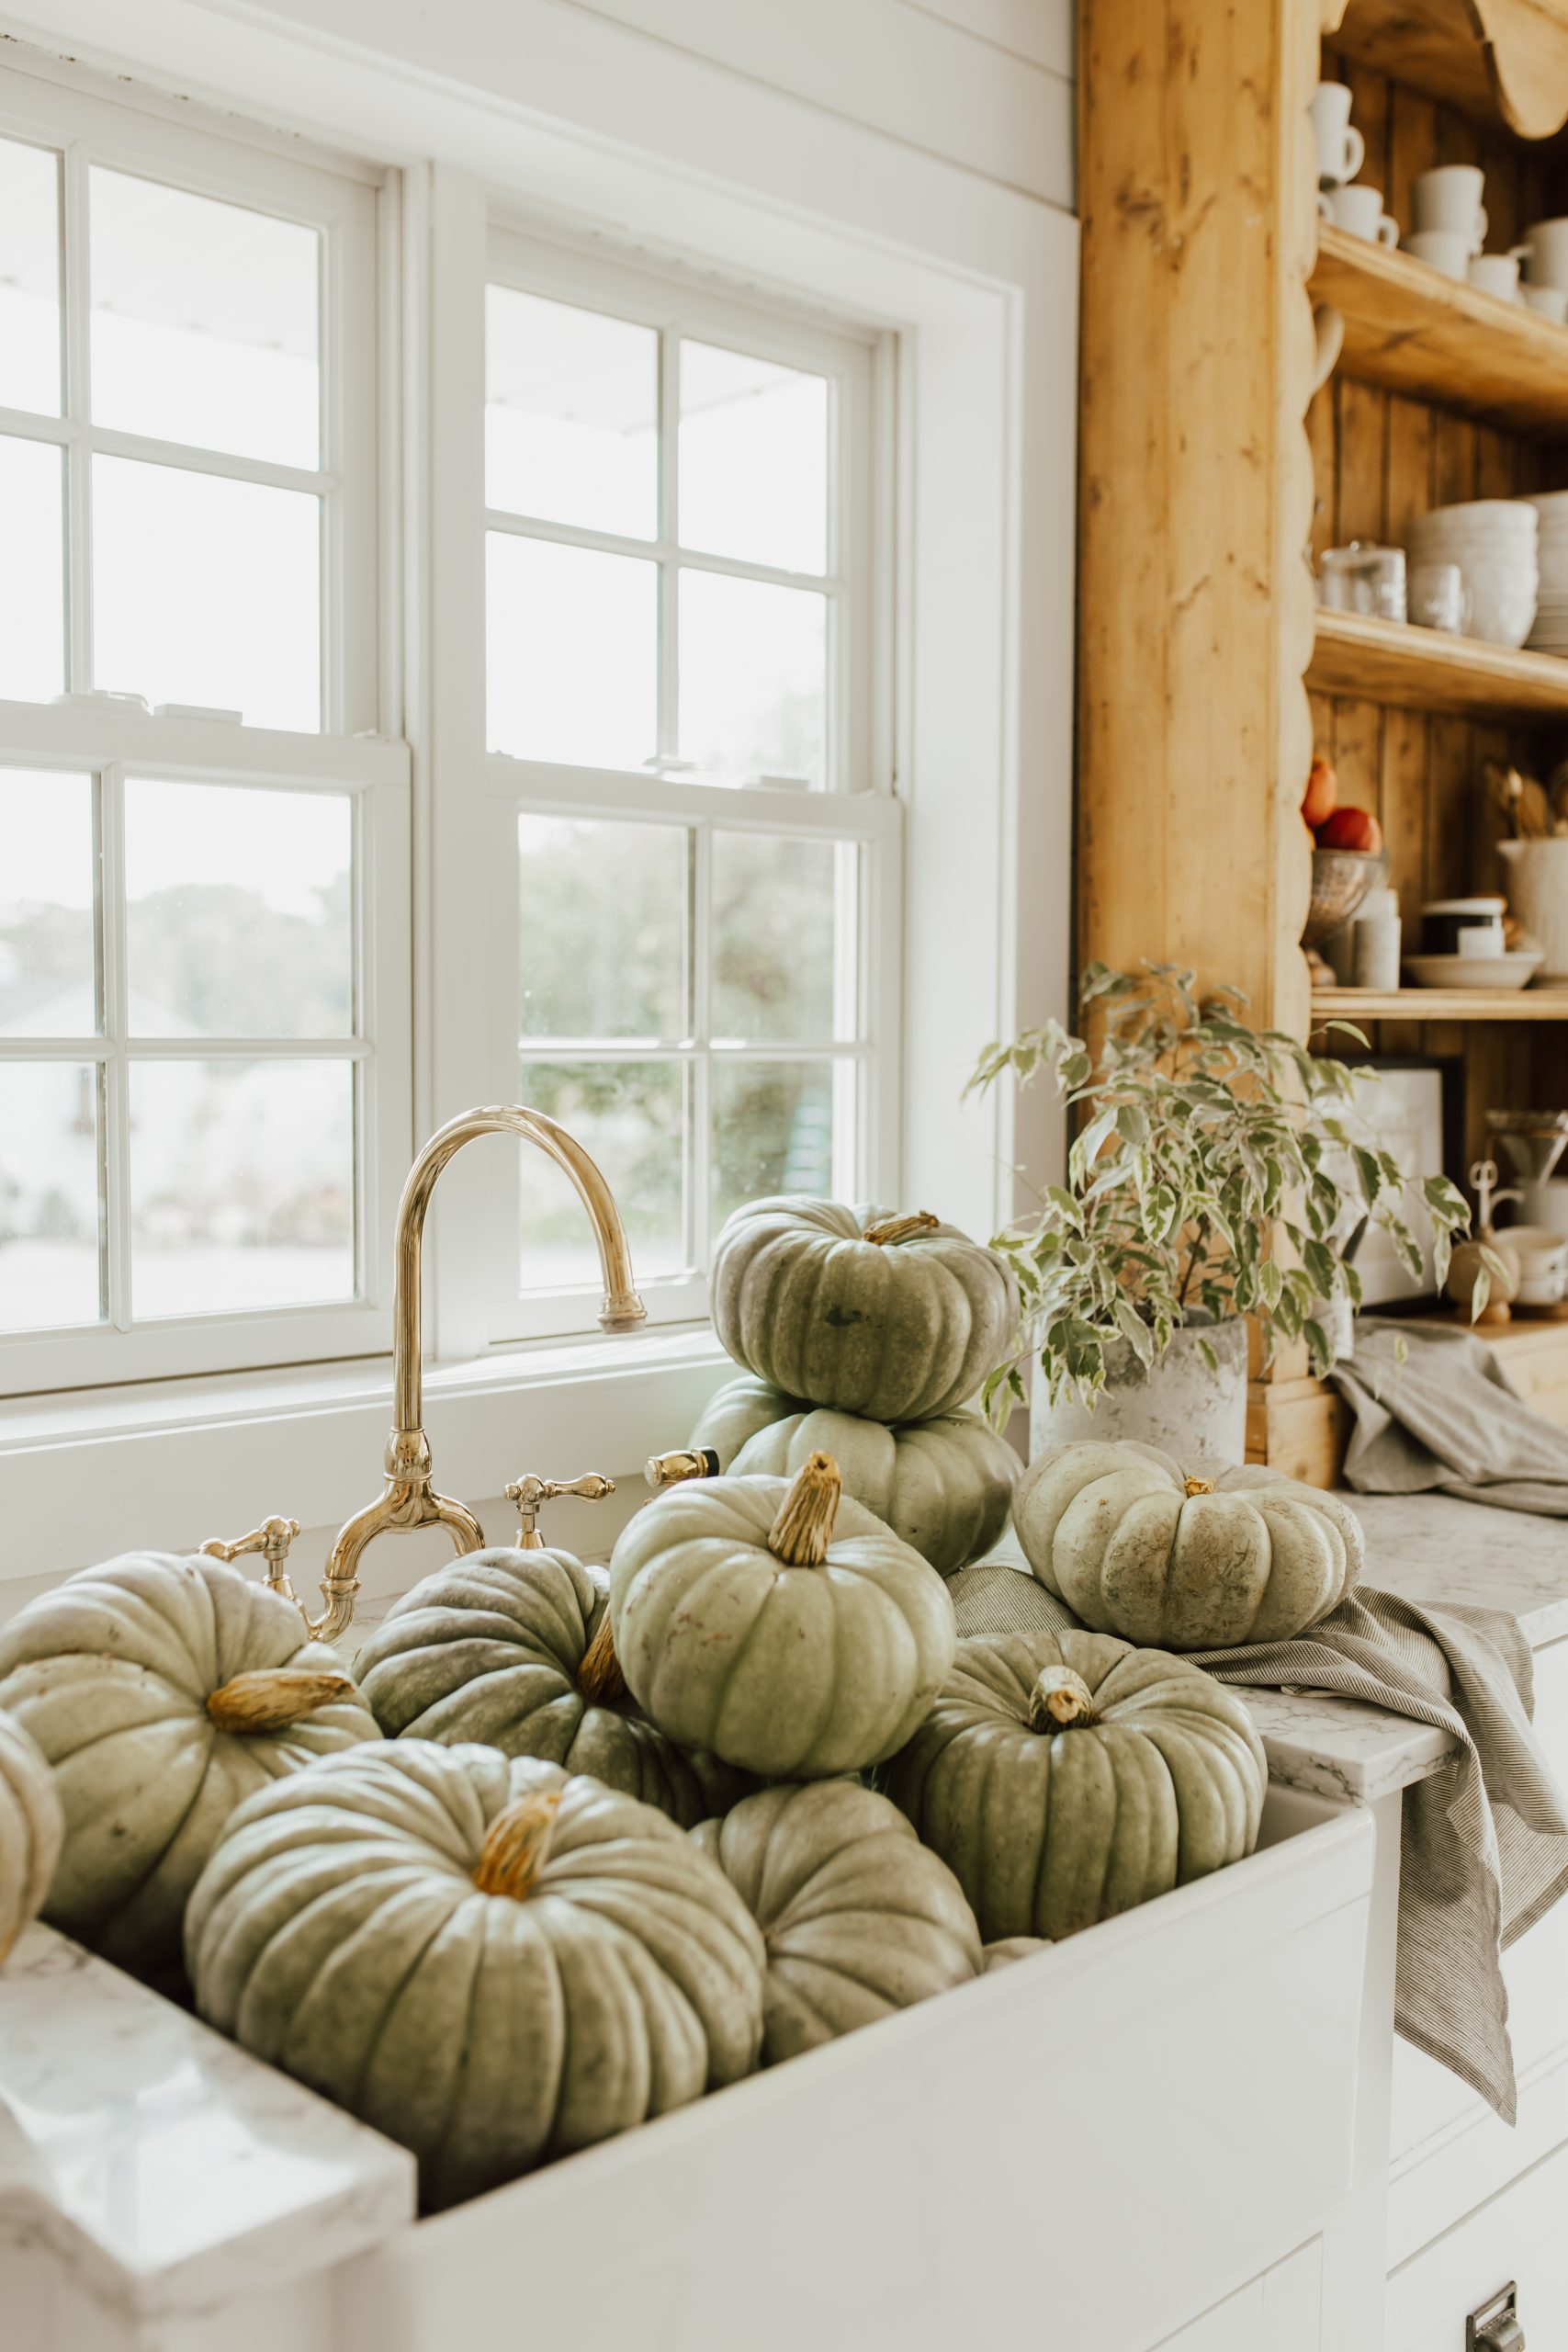 10 Steps to Make your Pumpkins Last Longer